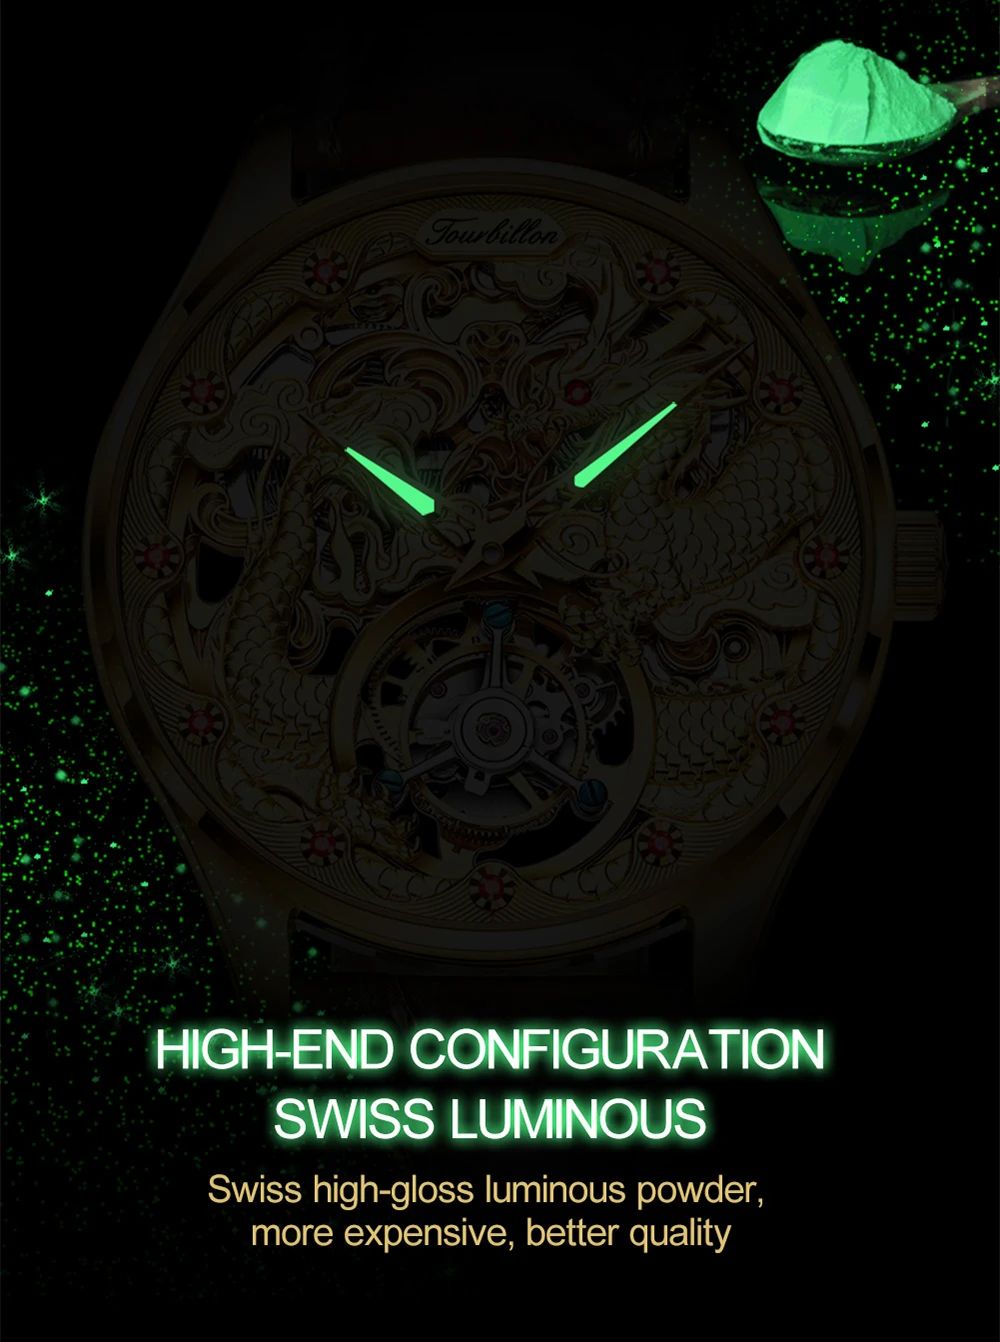 OUPINKE luxury brand watches | 2mrk Sale Online